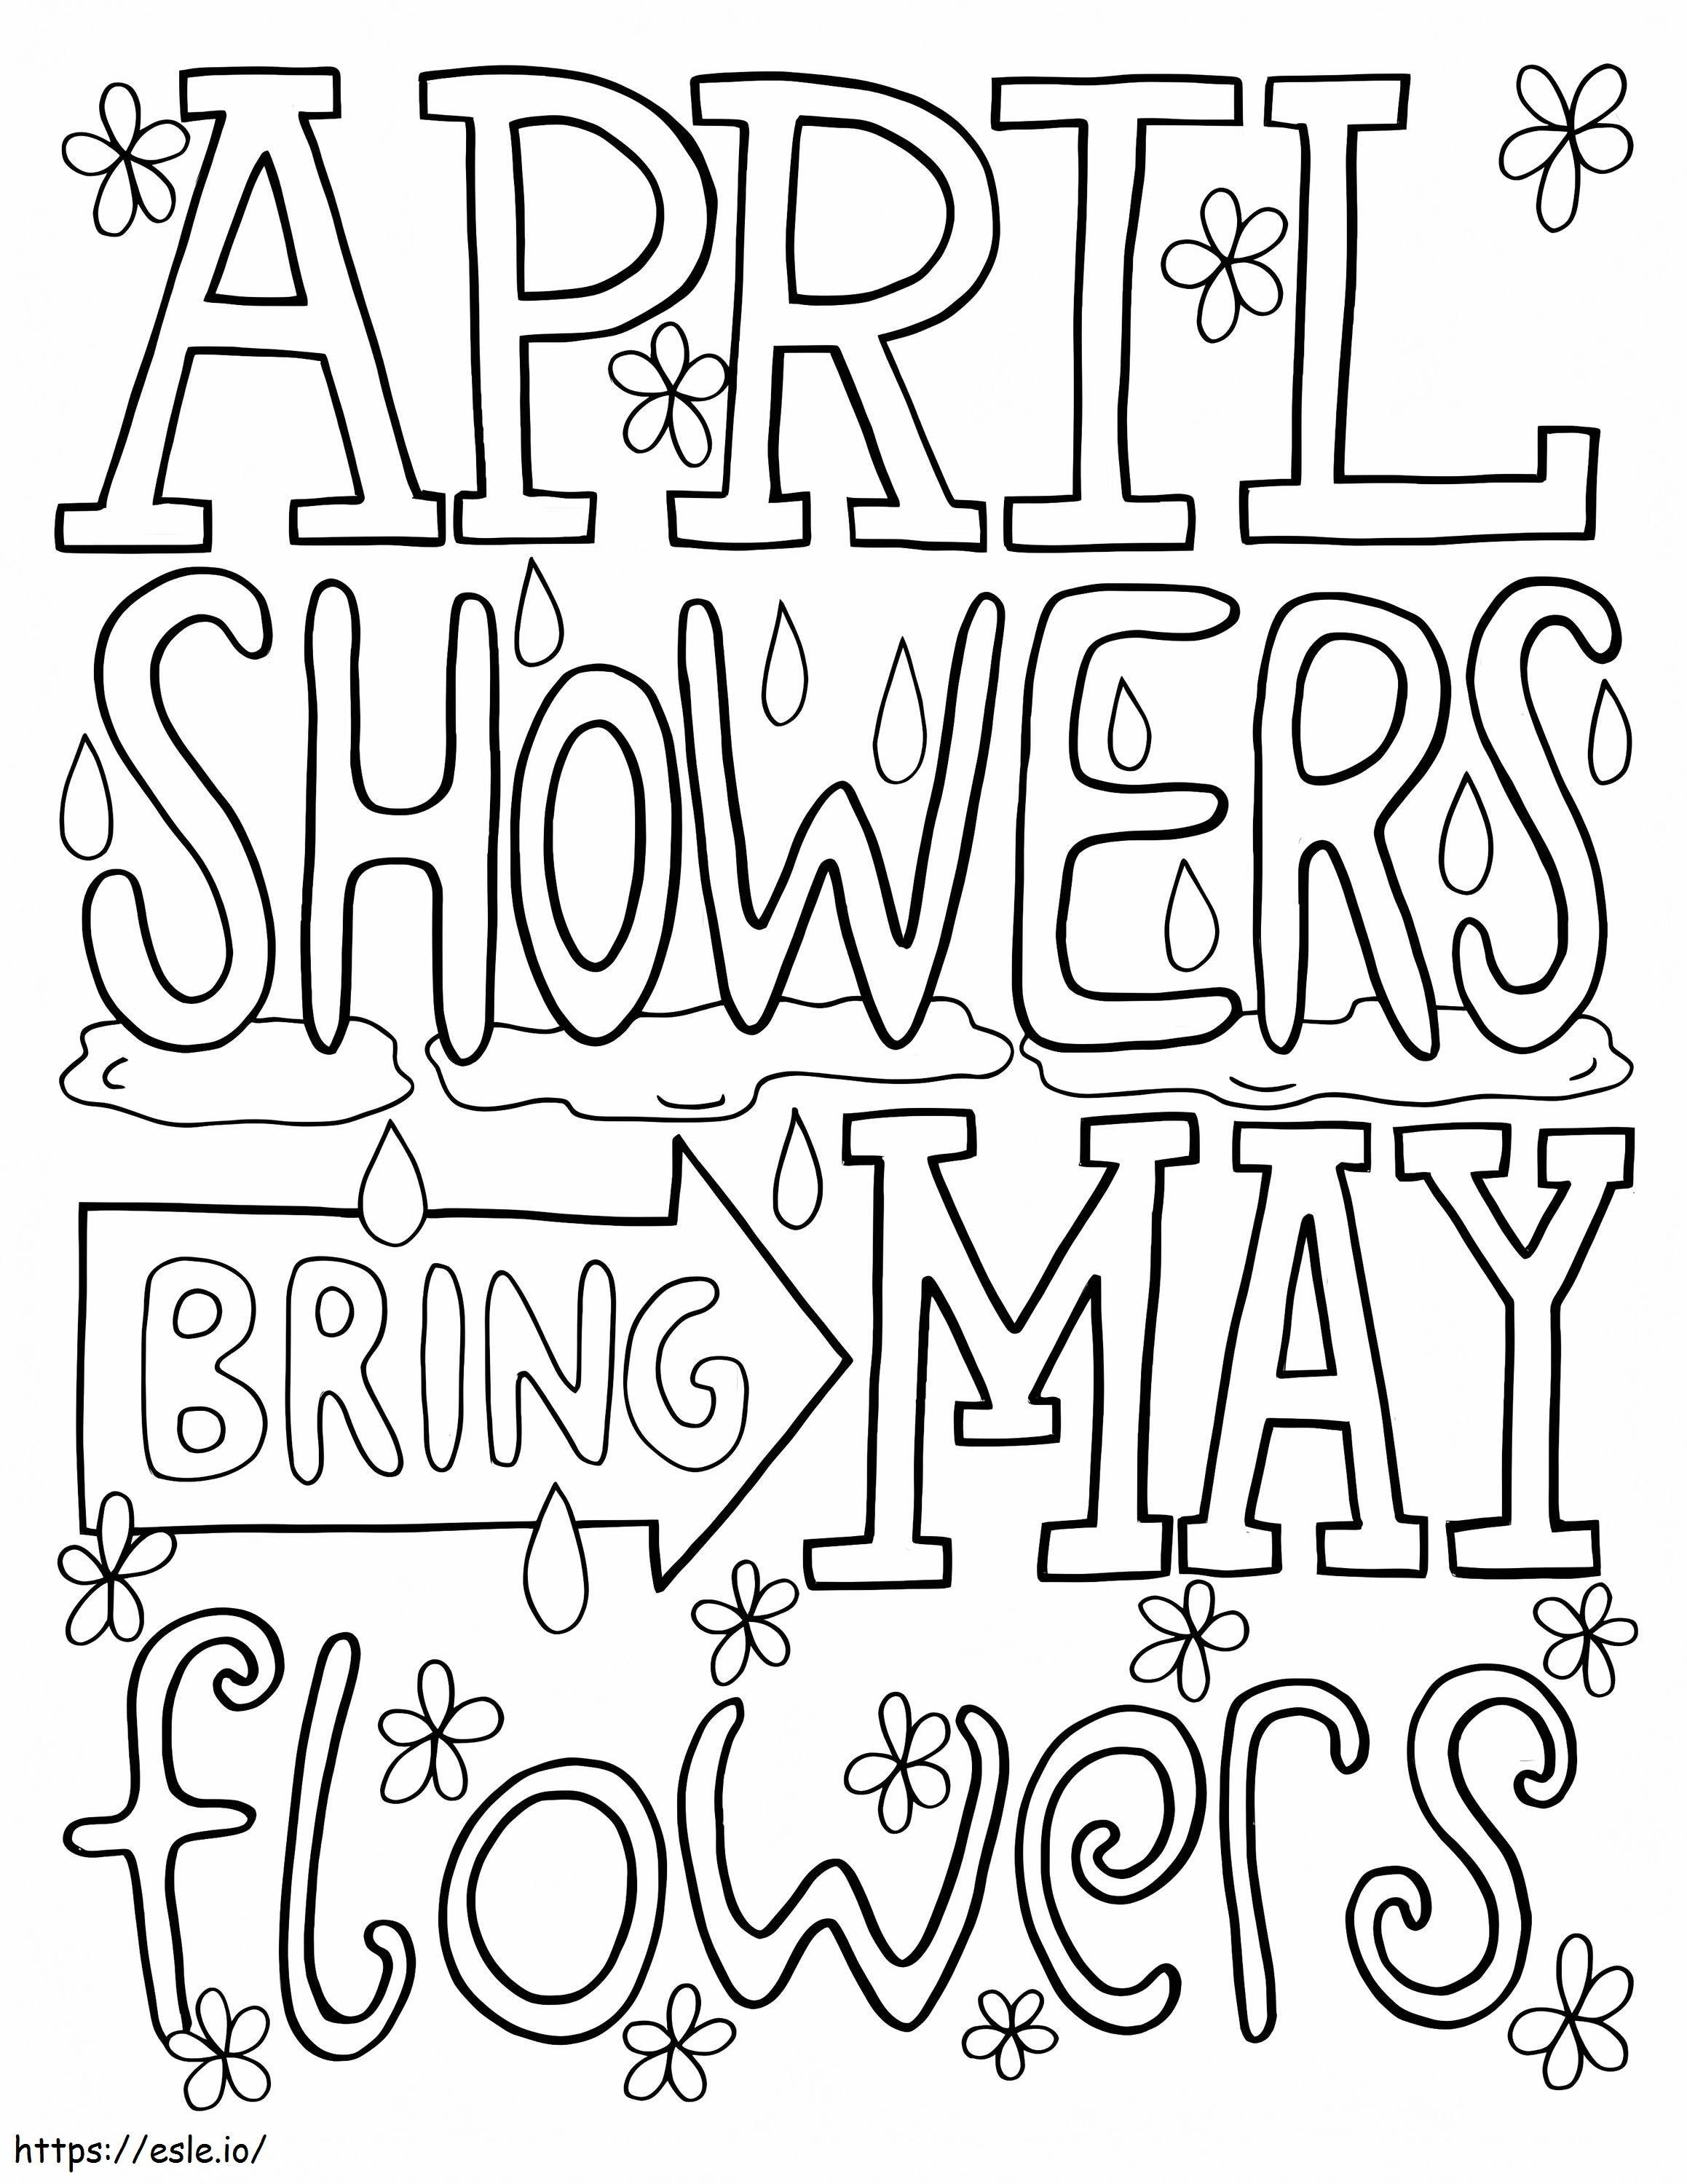 Le piogge di aprile portano i fiori di maggio da colorare